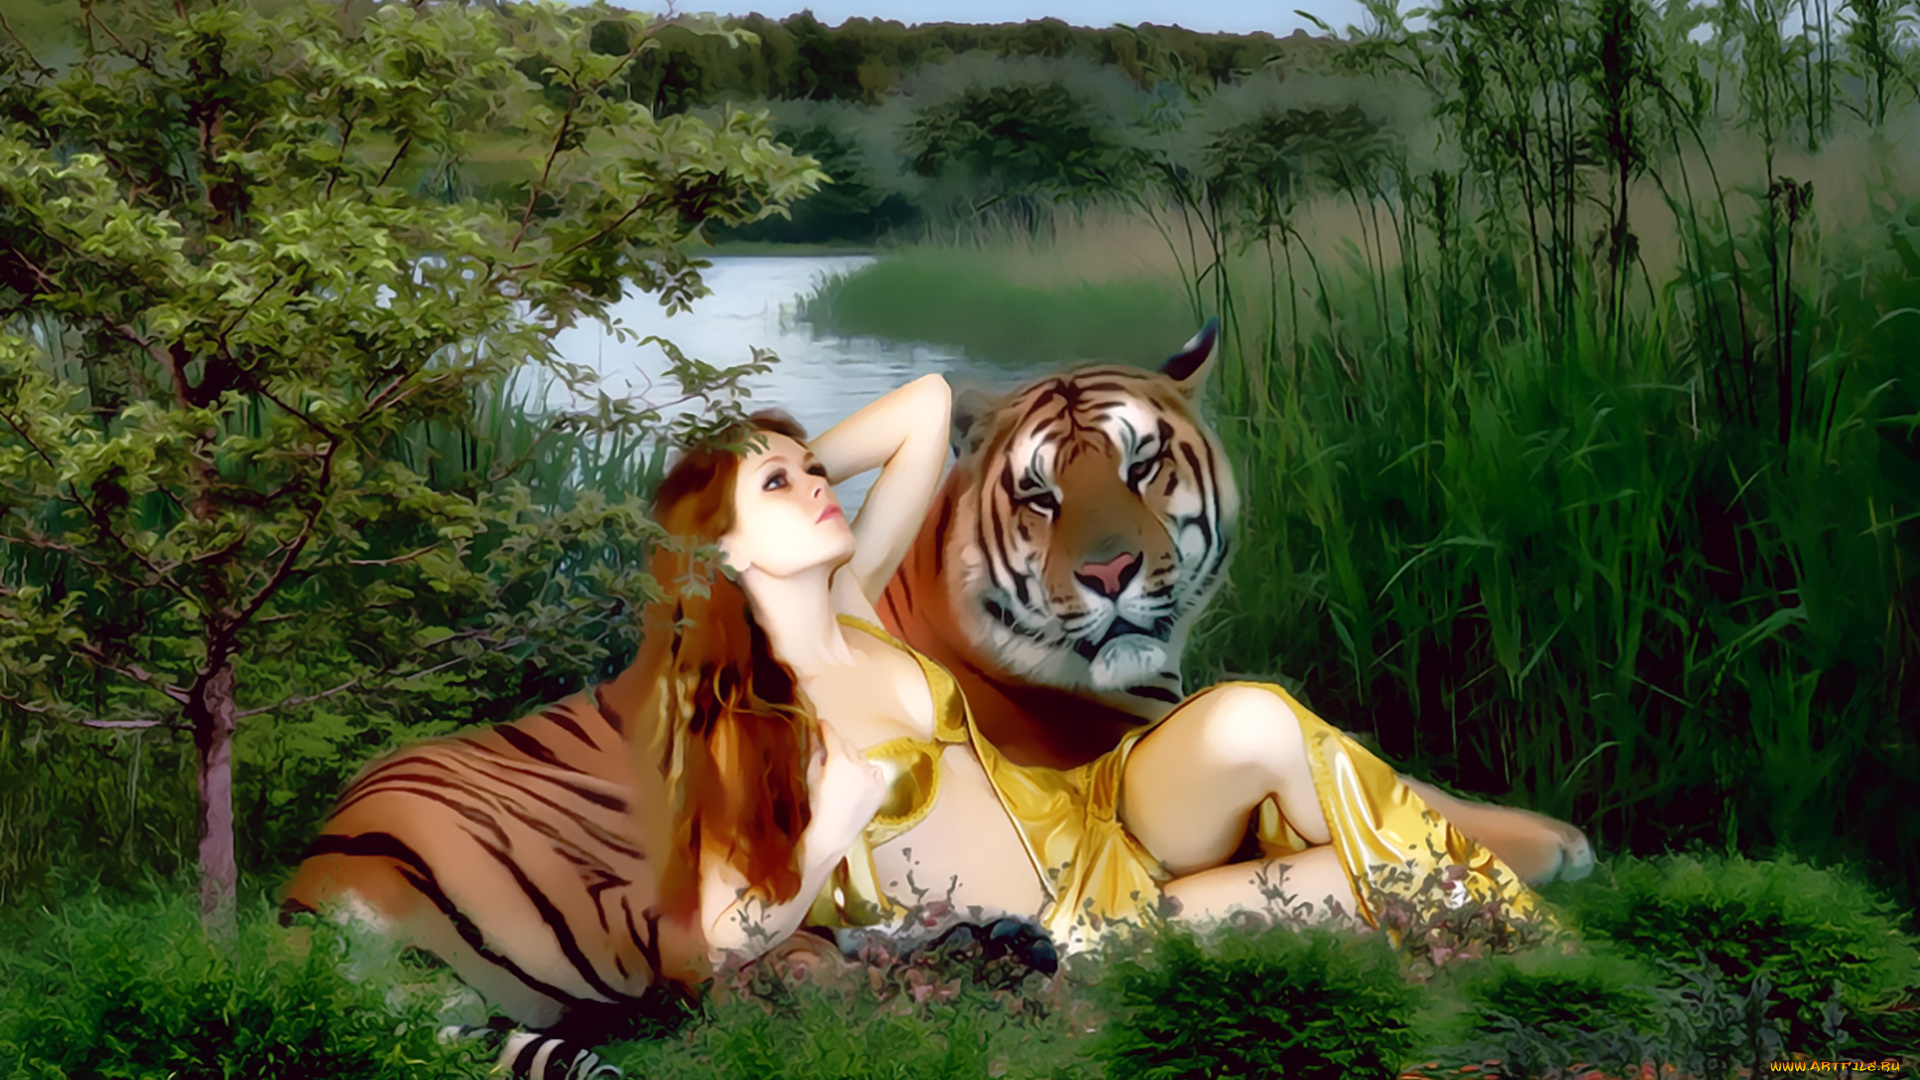 календари, фэнтези, девушка, хищник, тигр, зверь, животное, водоем, растение, природа, calendar, 2020